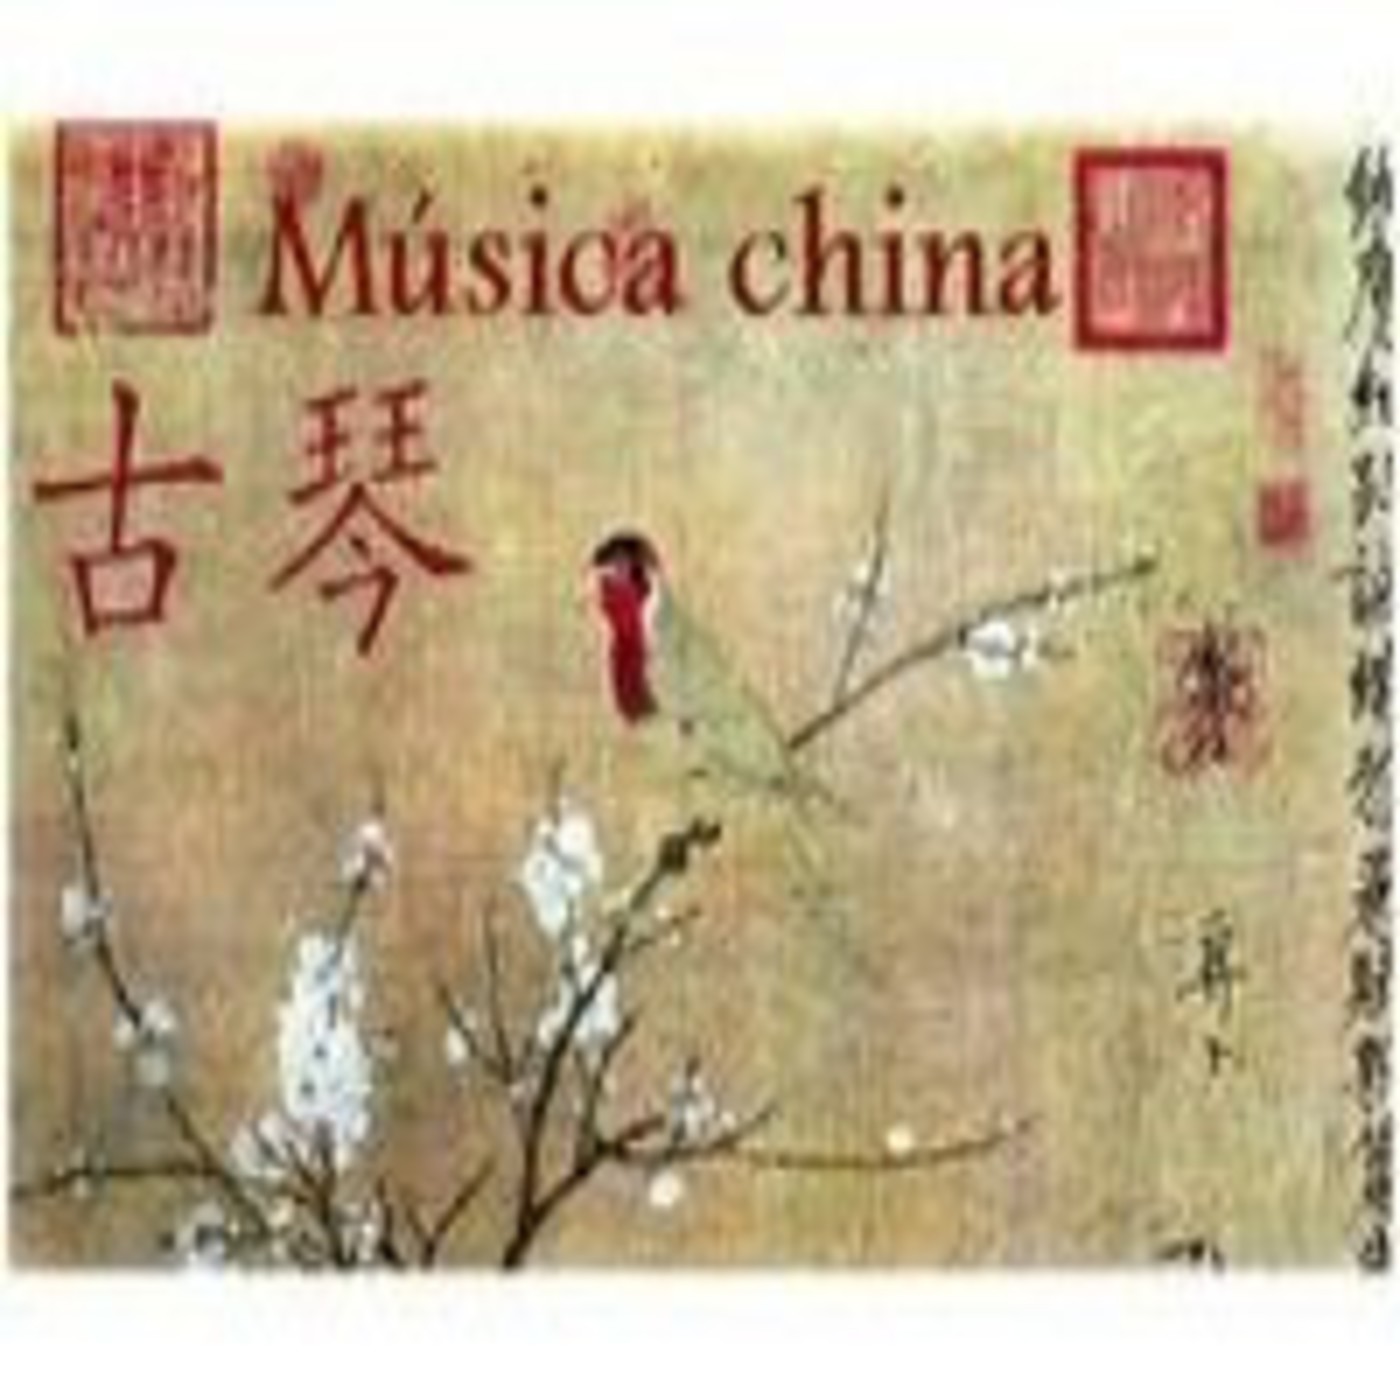 descargar musica tradicional china mp3 gratis